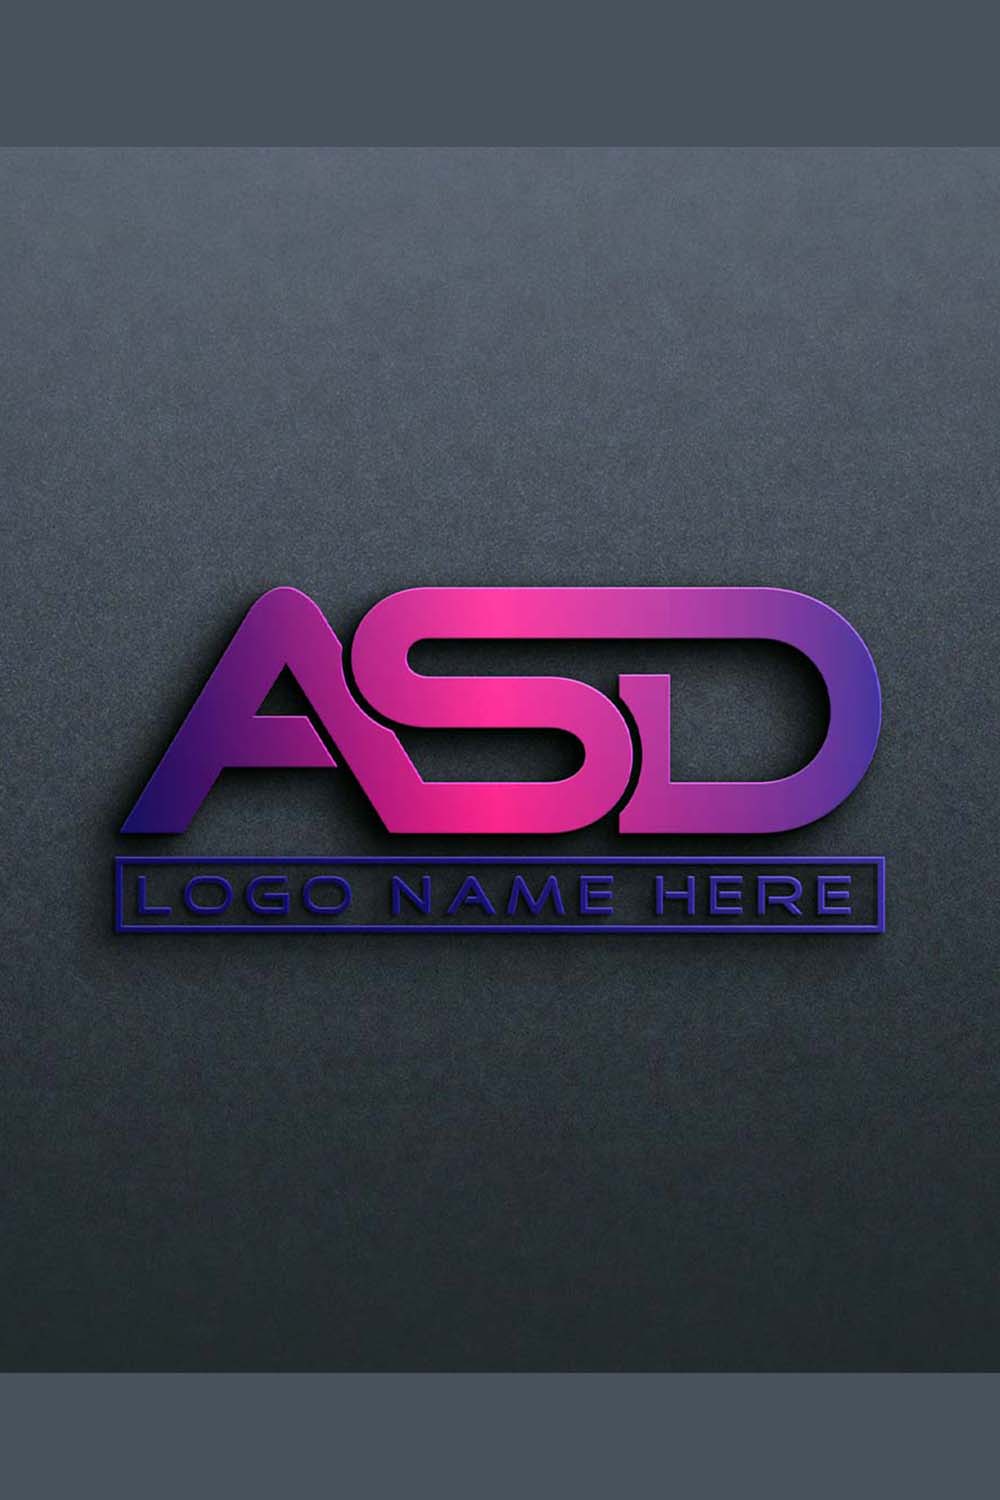 ASD Letter Logo Design in Illustrator CC - 100% Editable pinterest preview image.